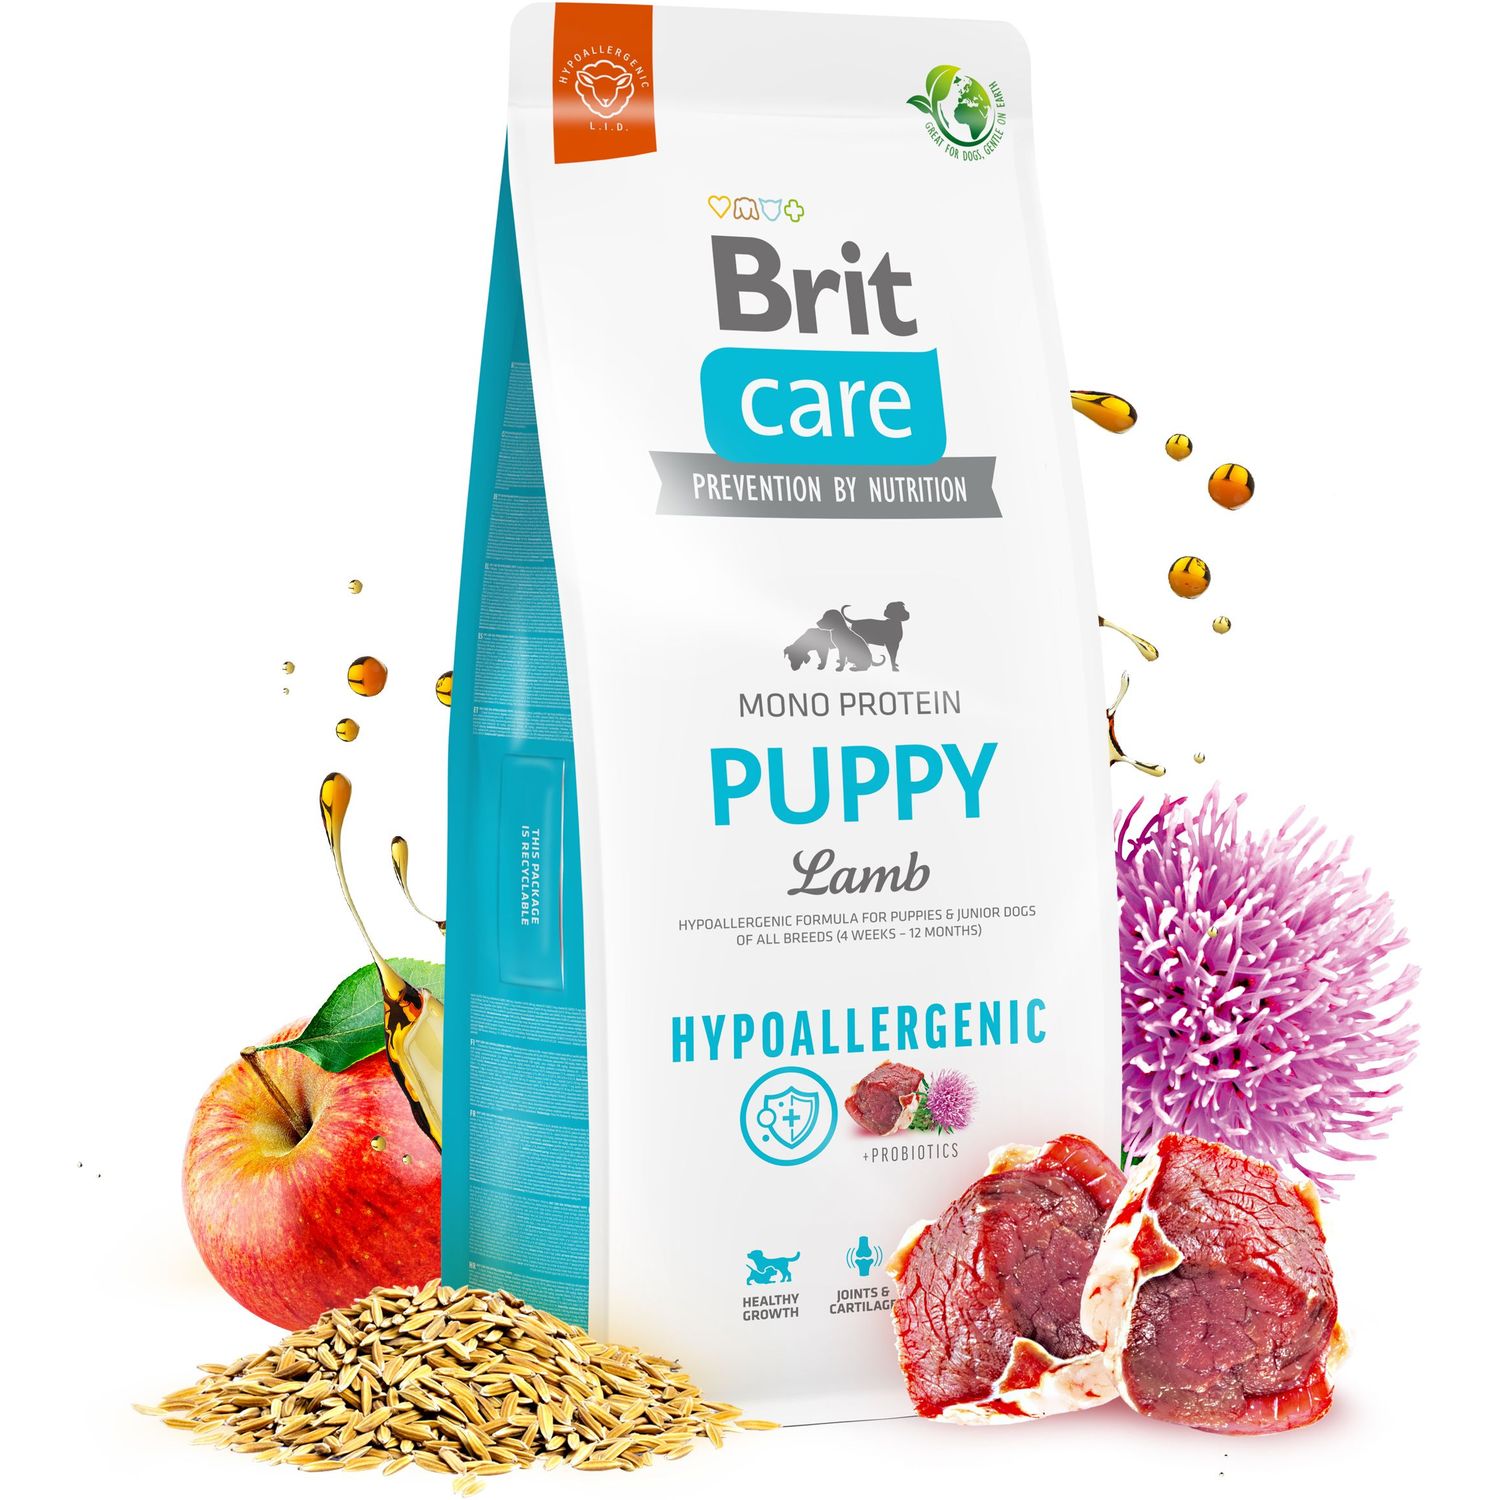 Сухой корм для щенков Brit Care Dog Hypoallergenic Puppy, гипоаллергенный, с ягненком, 1 кг - фото 2